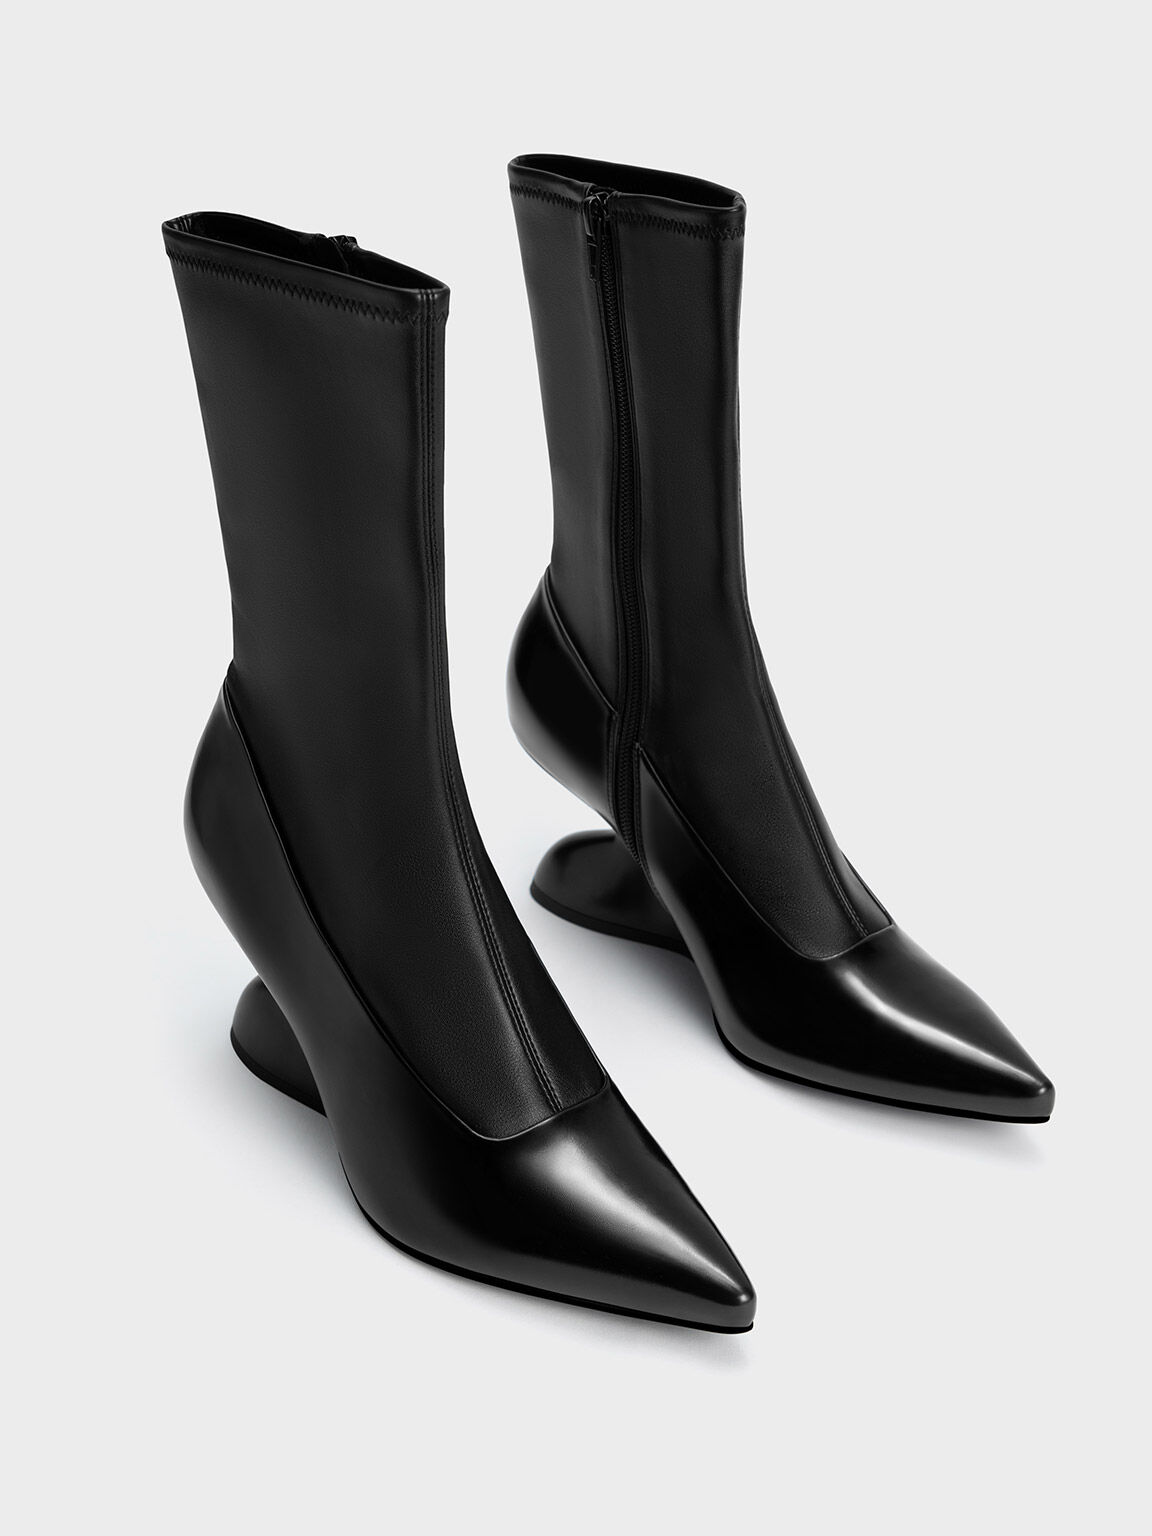 Zania Sculptural Heel Boots, Black, hi-res